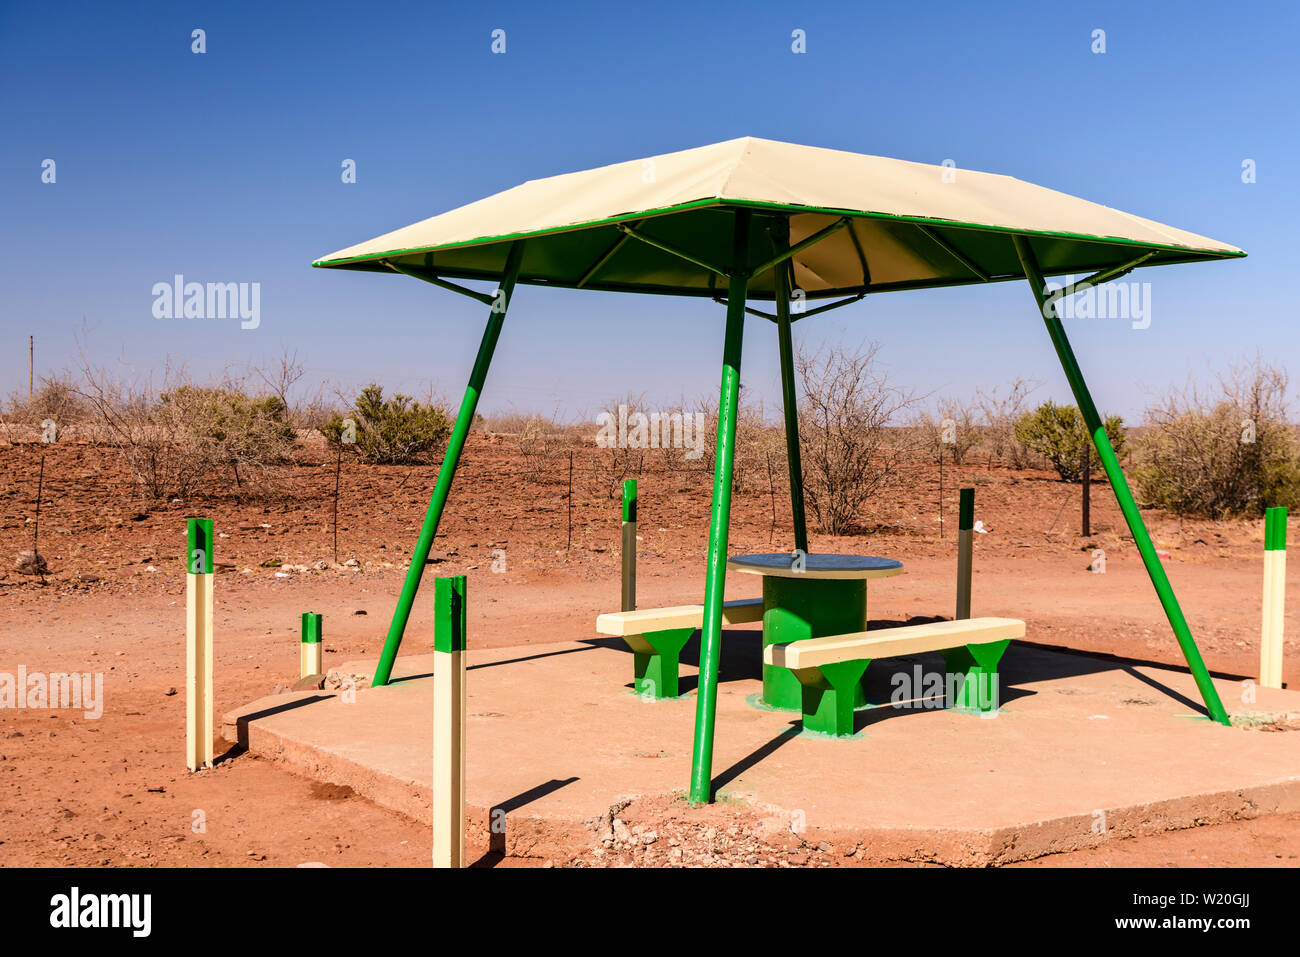 Konkrete Picknick Tisch und Bänke mit einem Schutzdach für den Schatten, in der Regel platziert alle 10-20 km entlang von Straßen in Namibia Stockfoto